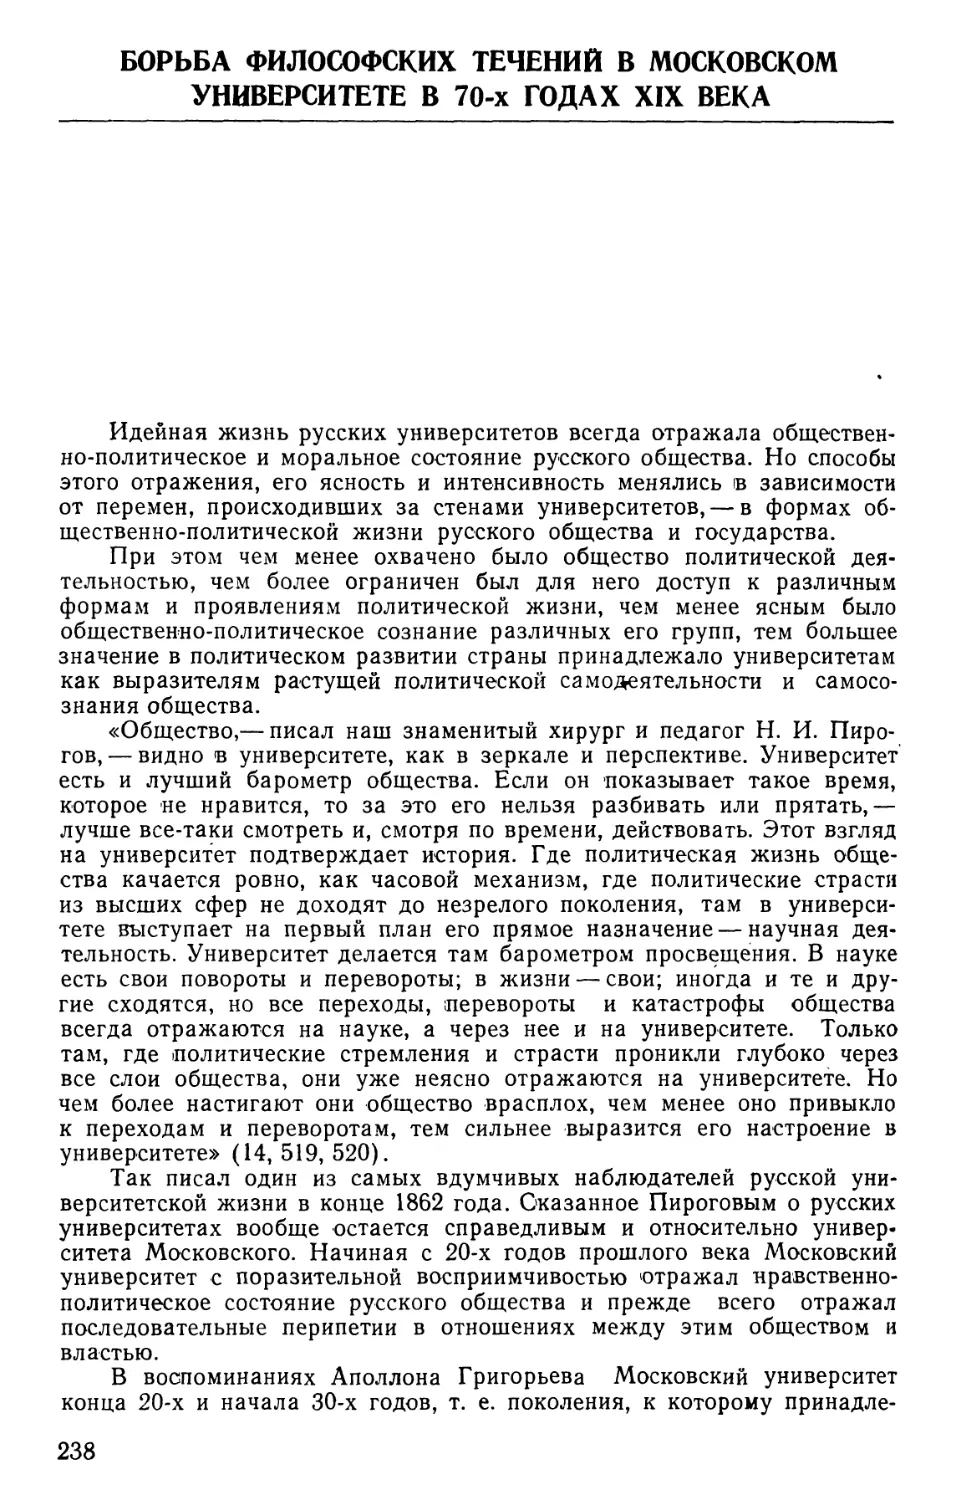 Борьба философских течений в Московском университете в 70-х годах XIX века